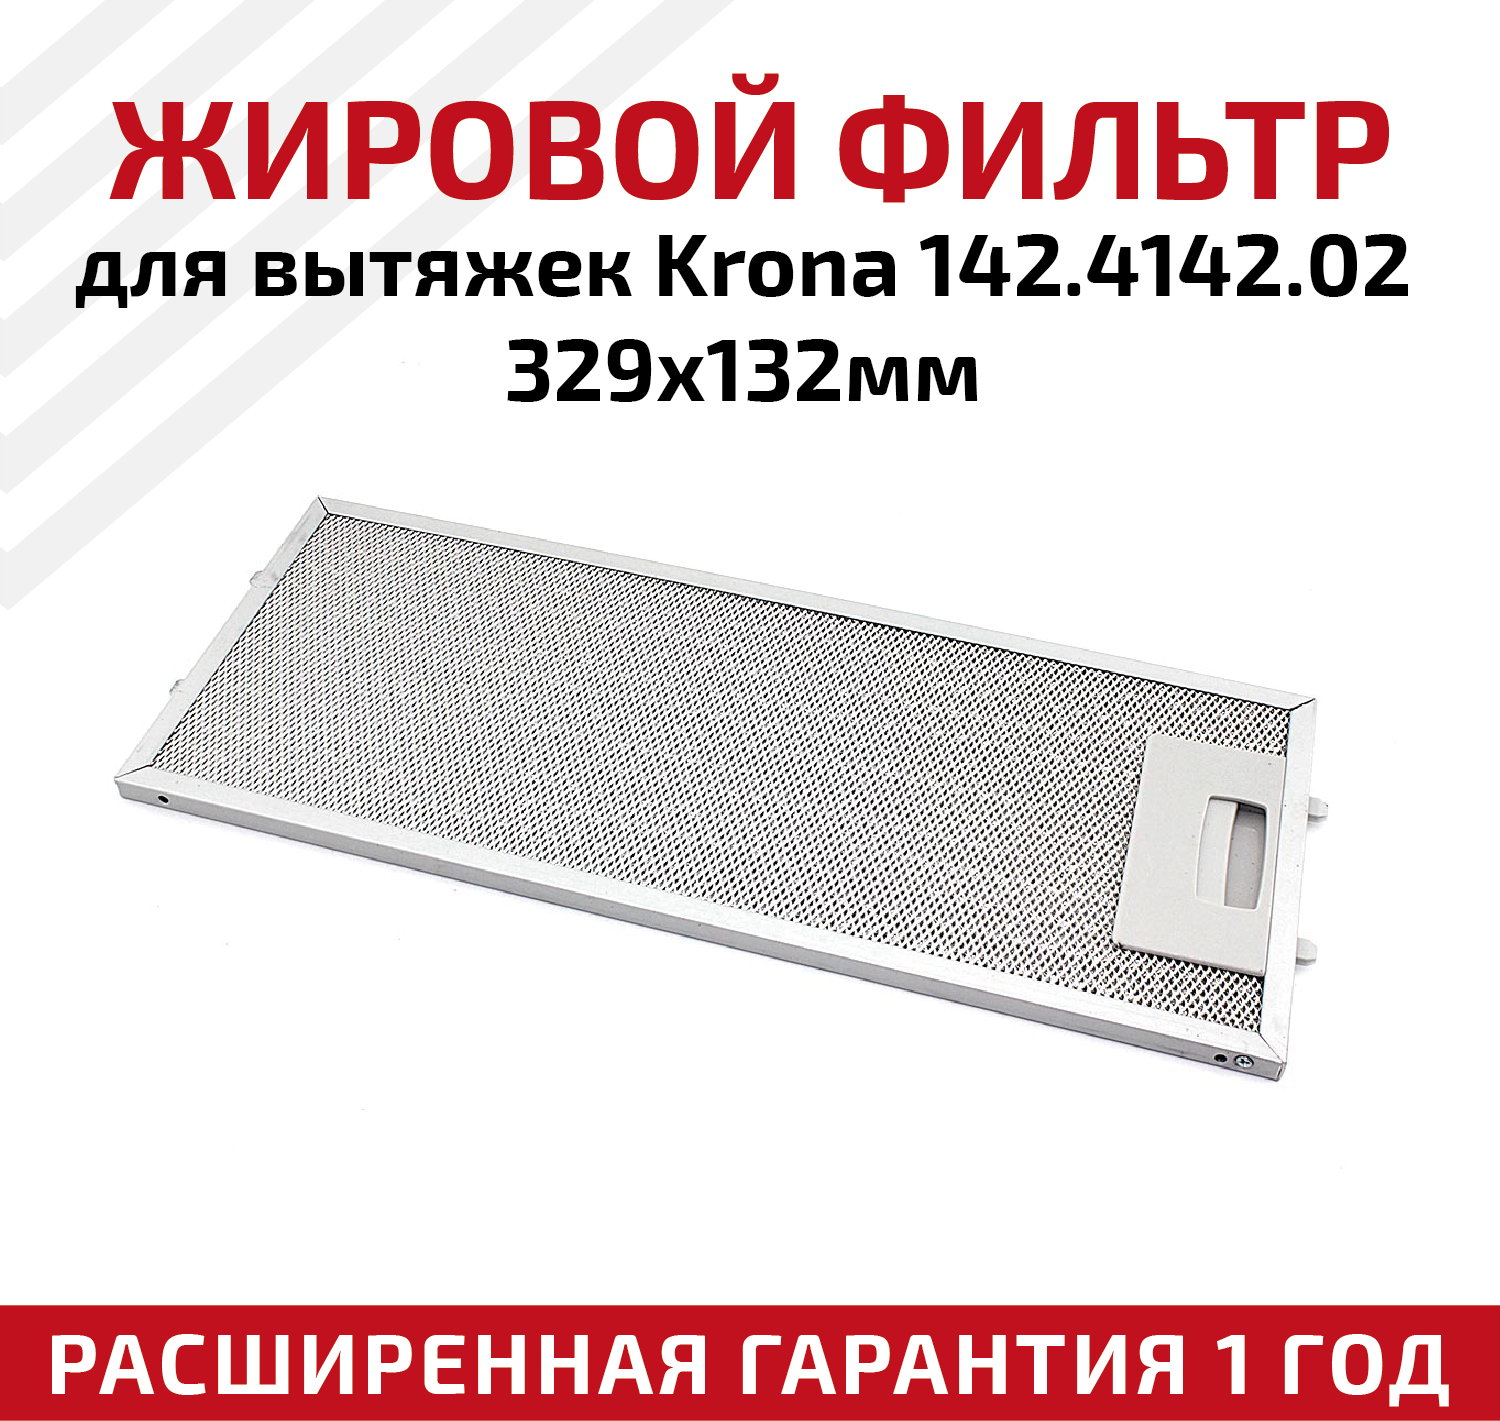 Жировой фильтр (кассета) алюминиевый (металлический) рамочный для вытяжек Krona 142.4142.02, многоразовый, 329х132мм